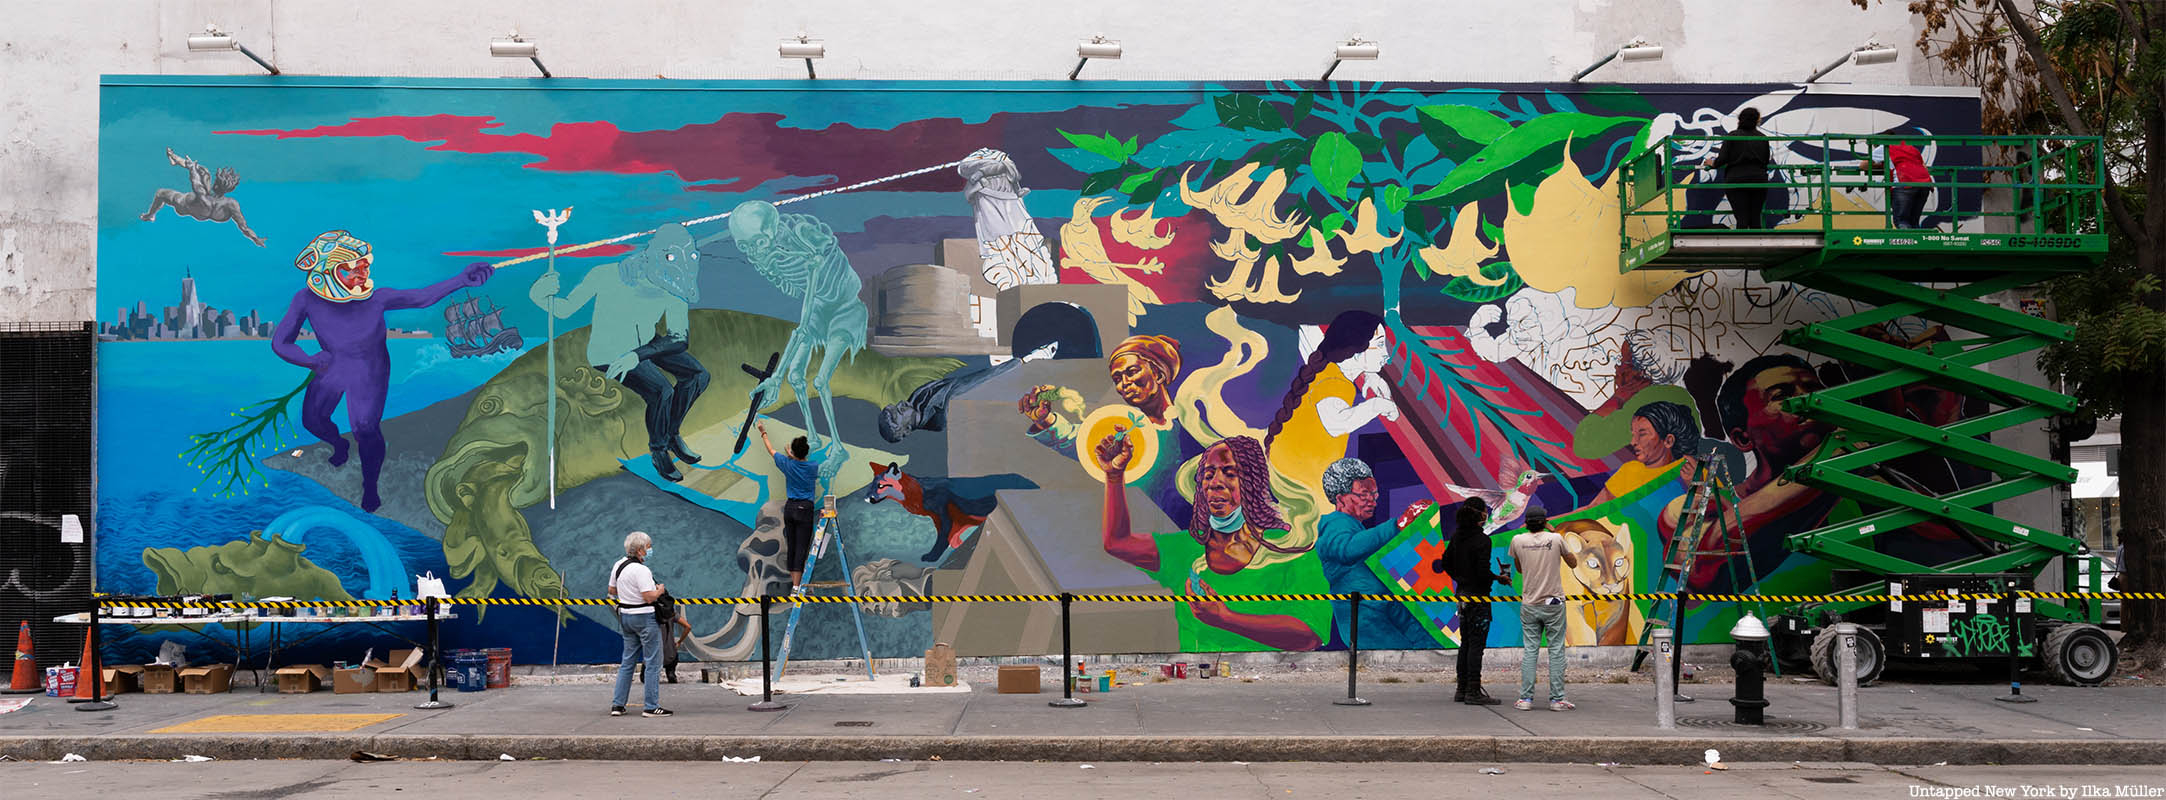 Bowery Graffiti Wall